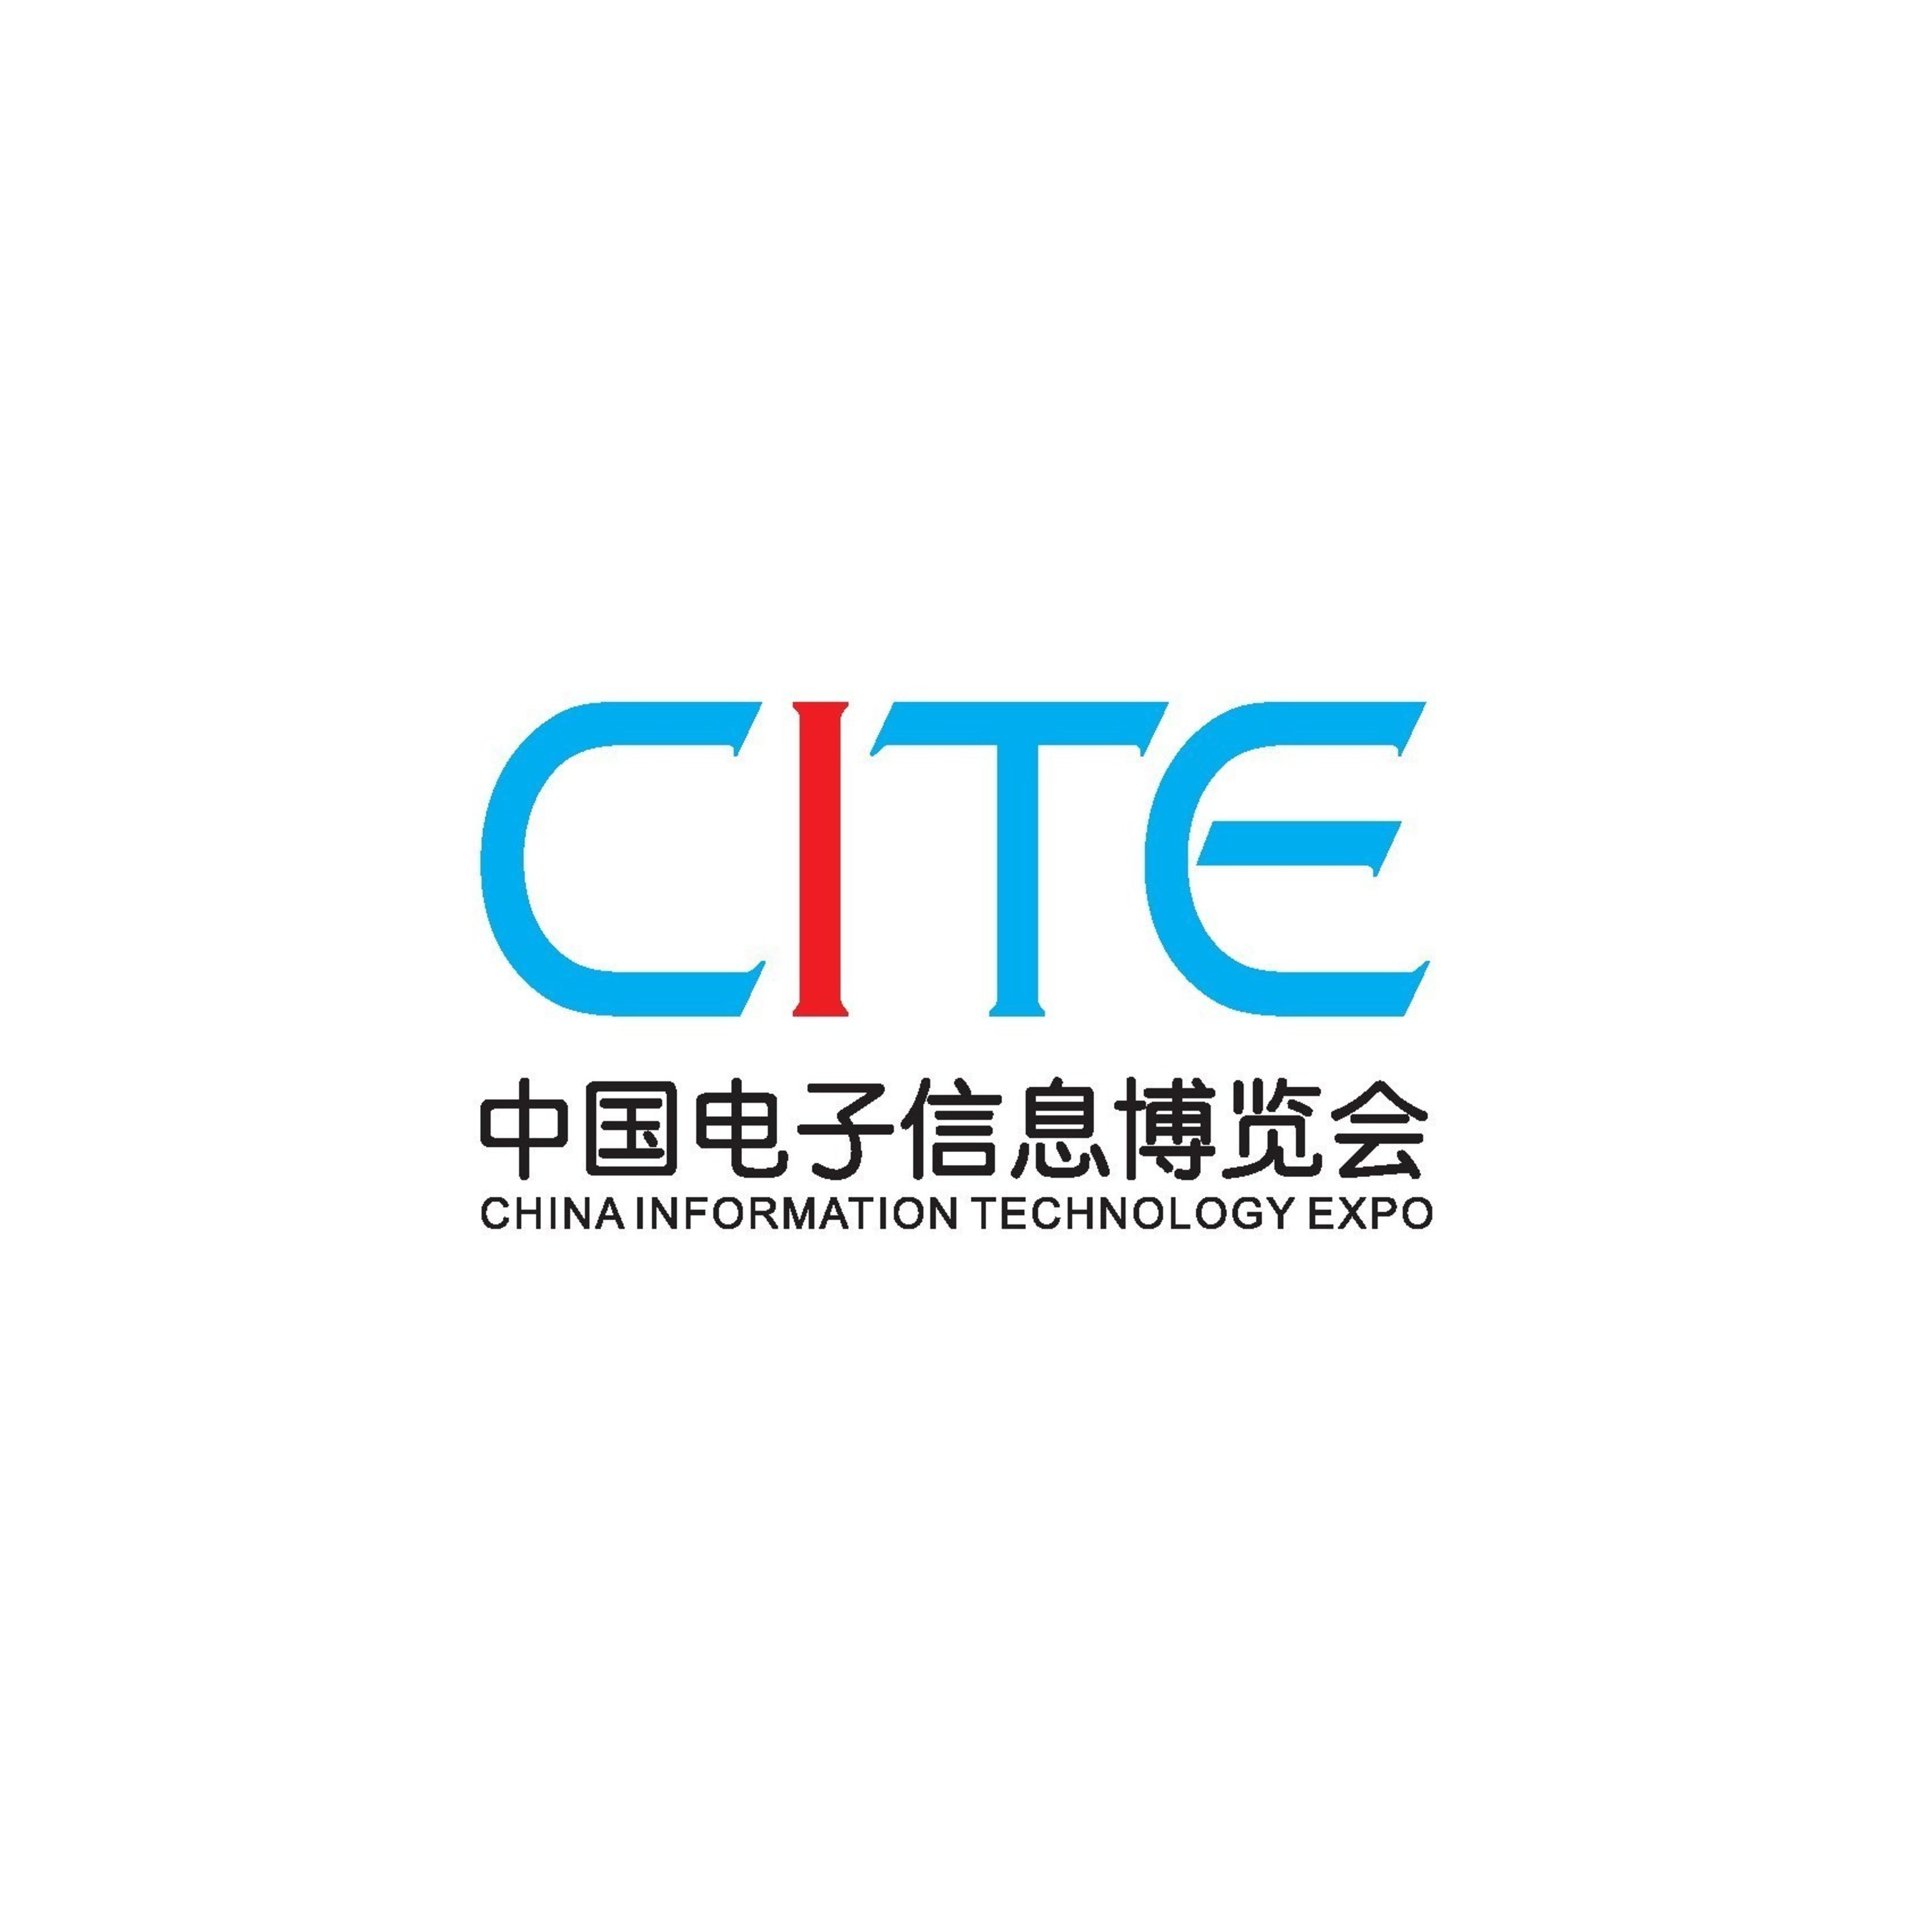 CITE Logo